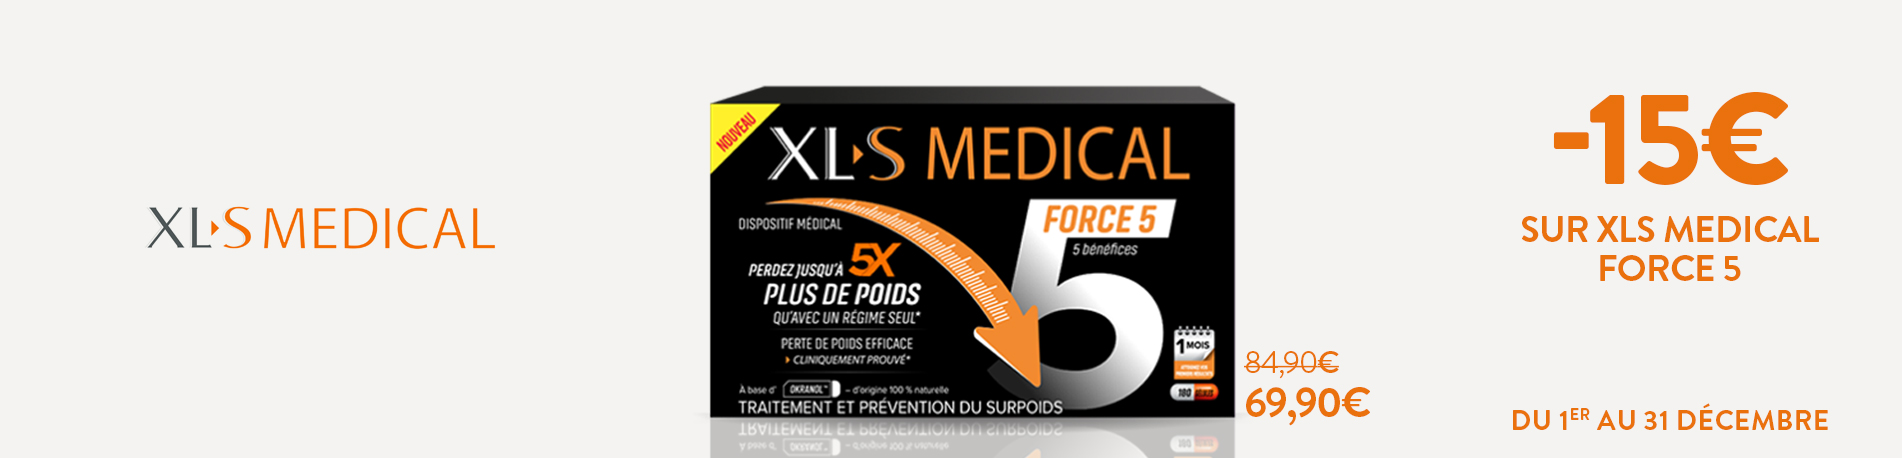 Promotion XLS Médical Force 5 - Pharmacie en ligne ...